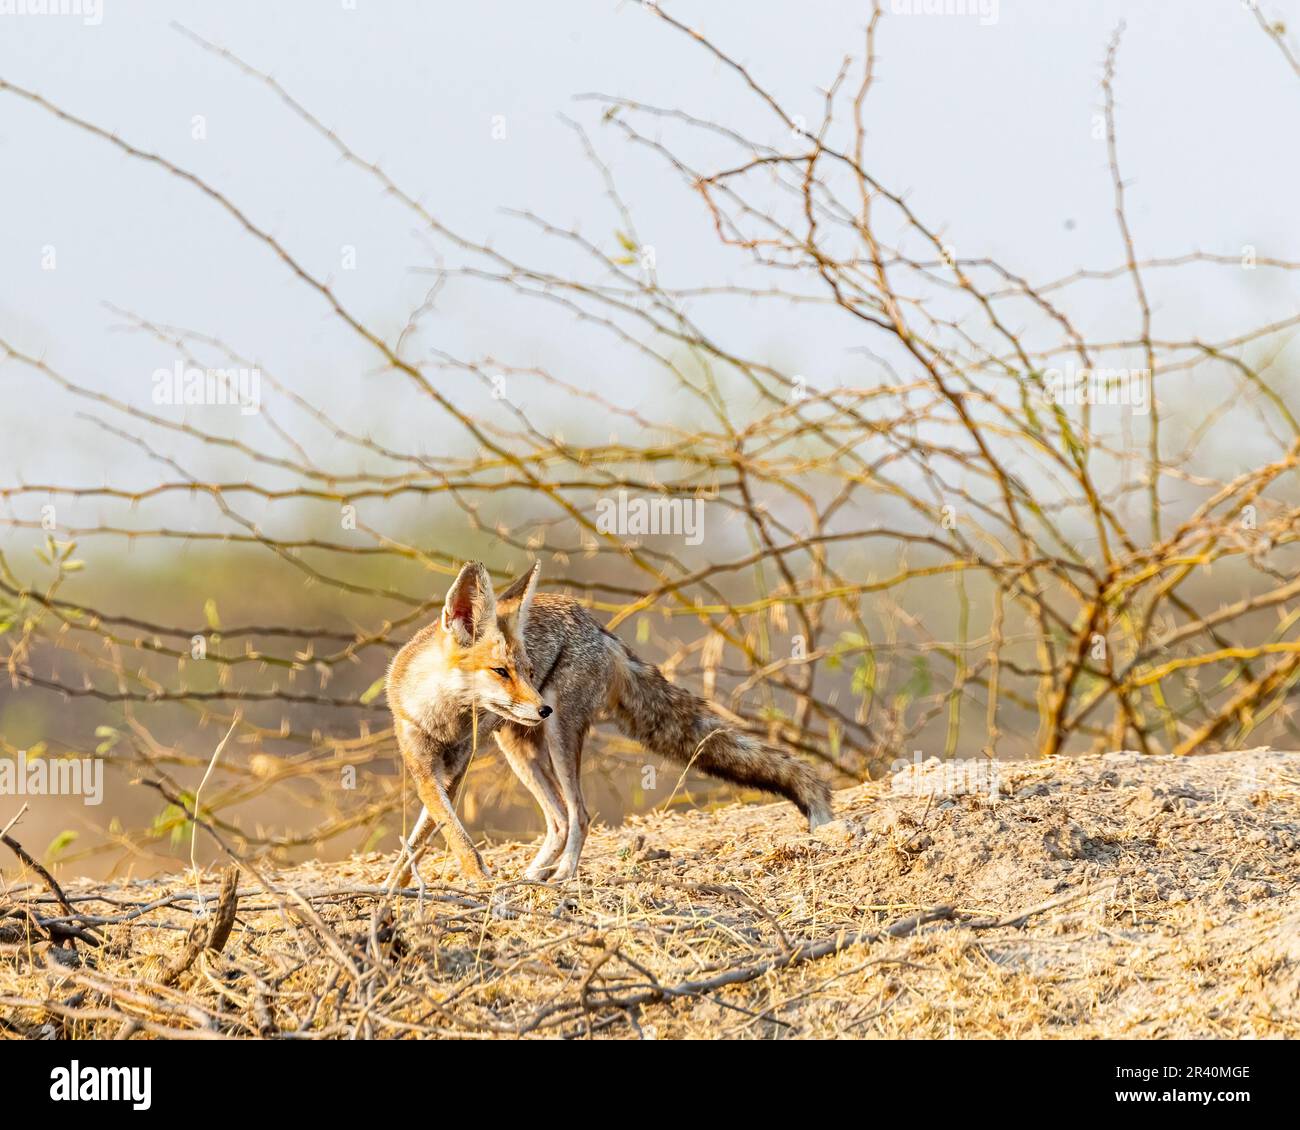 Un renard du désert en forêt Banque D'Images